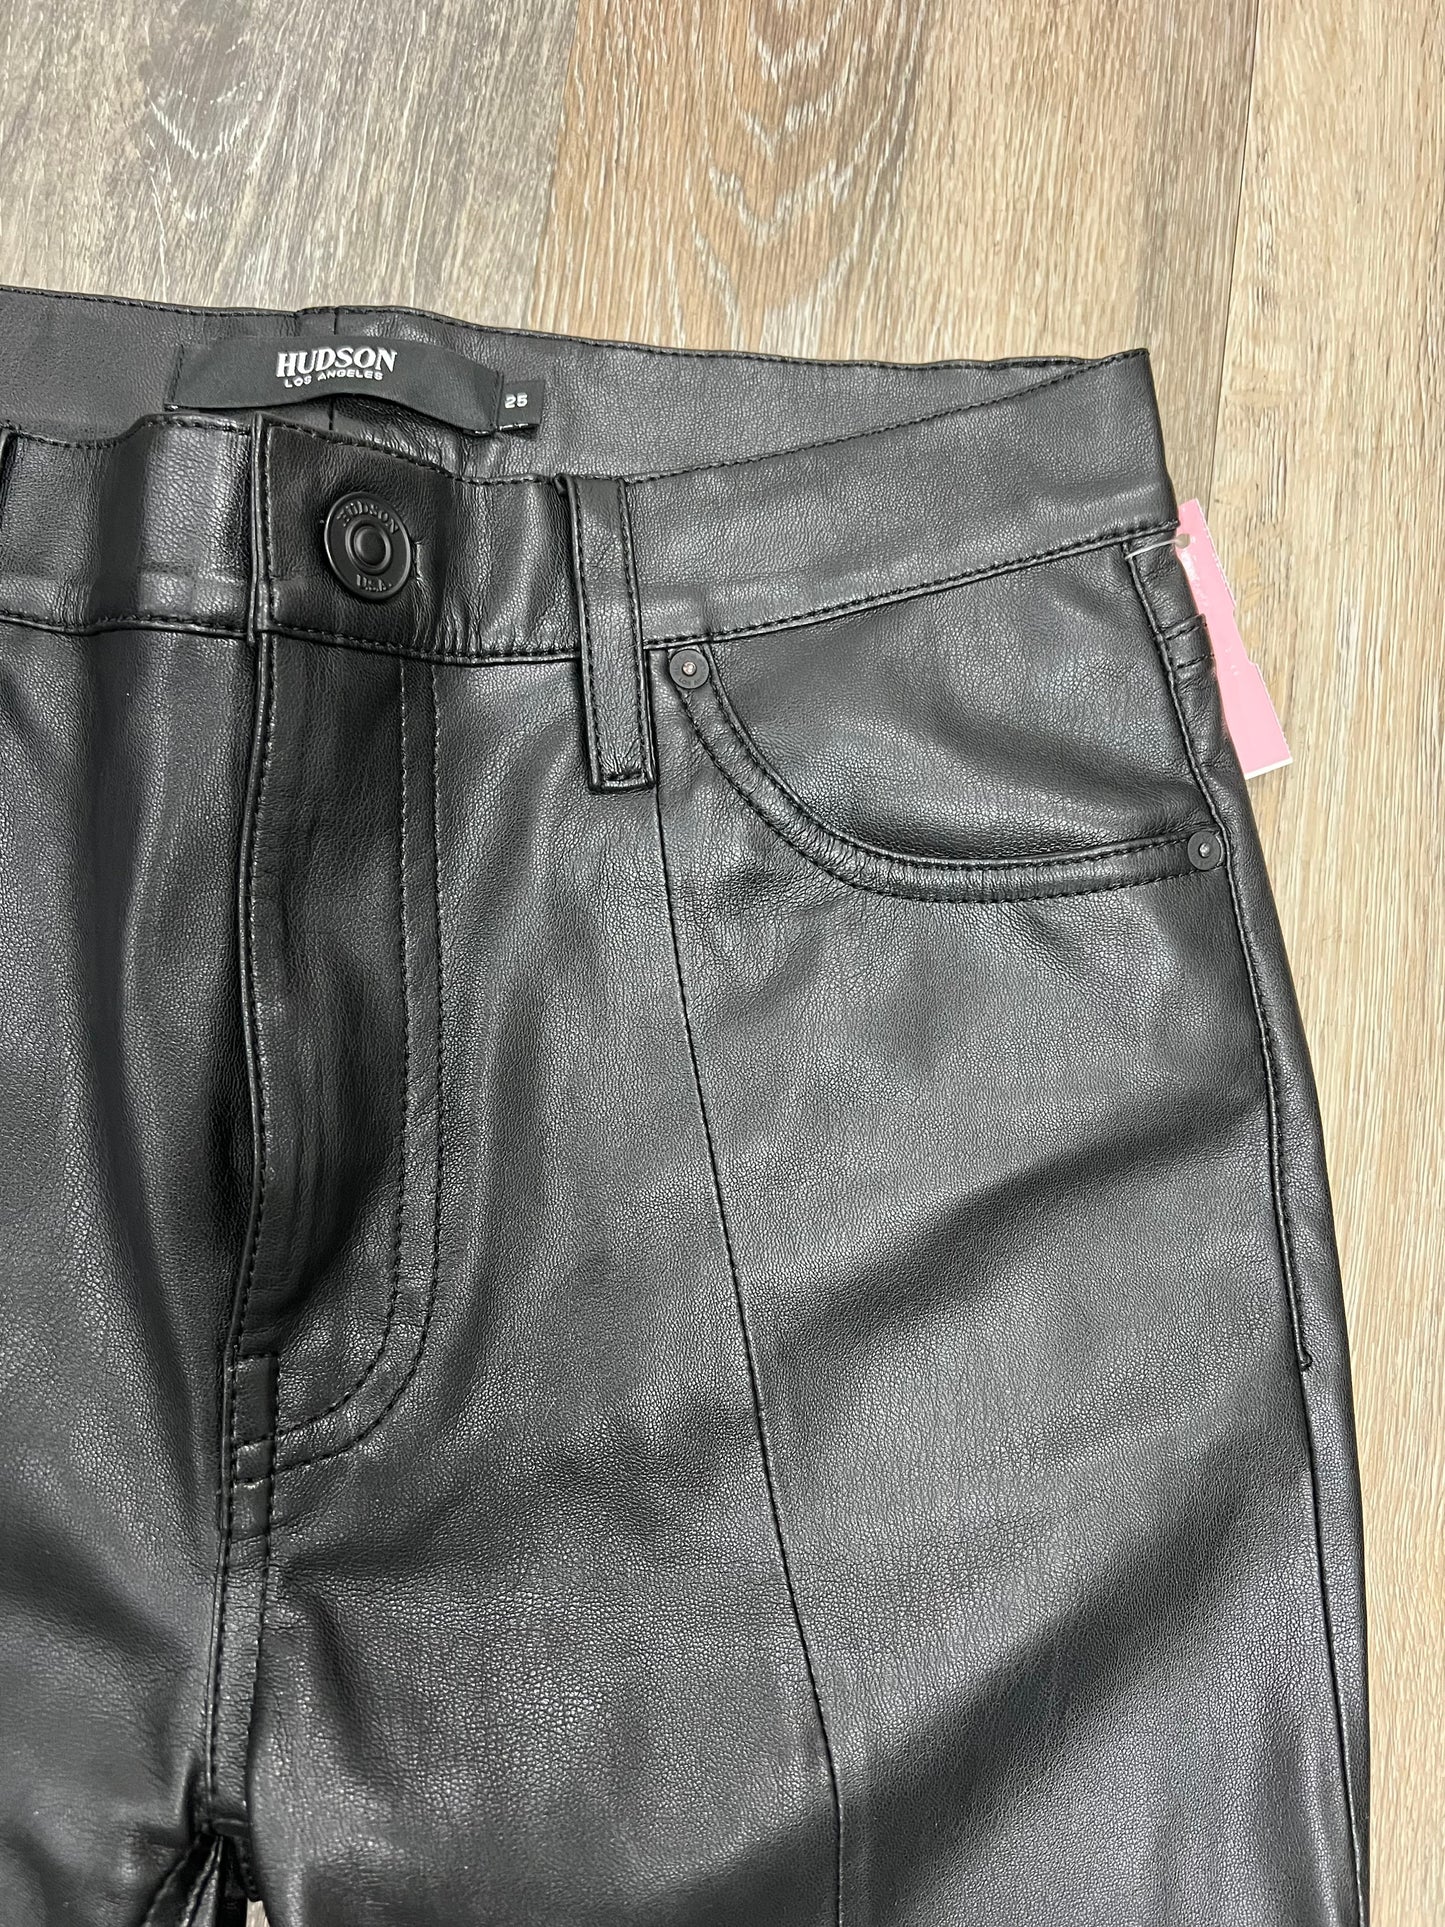 Pants Designer By Hudson  Size: 1/25